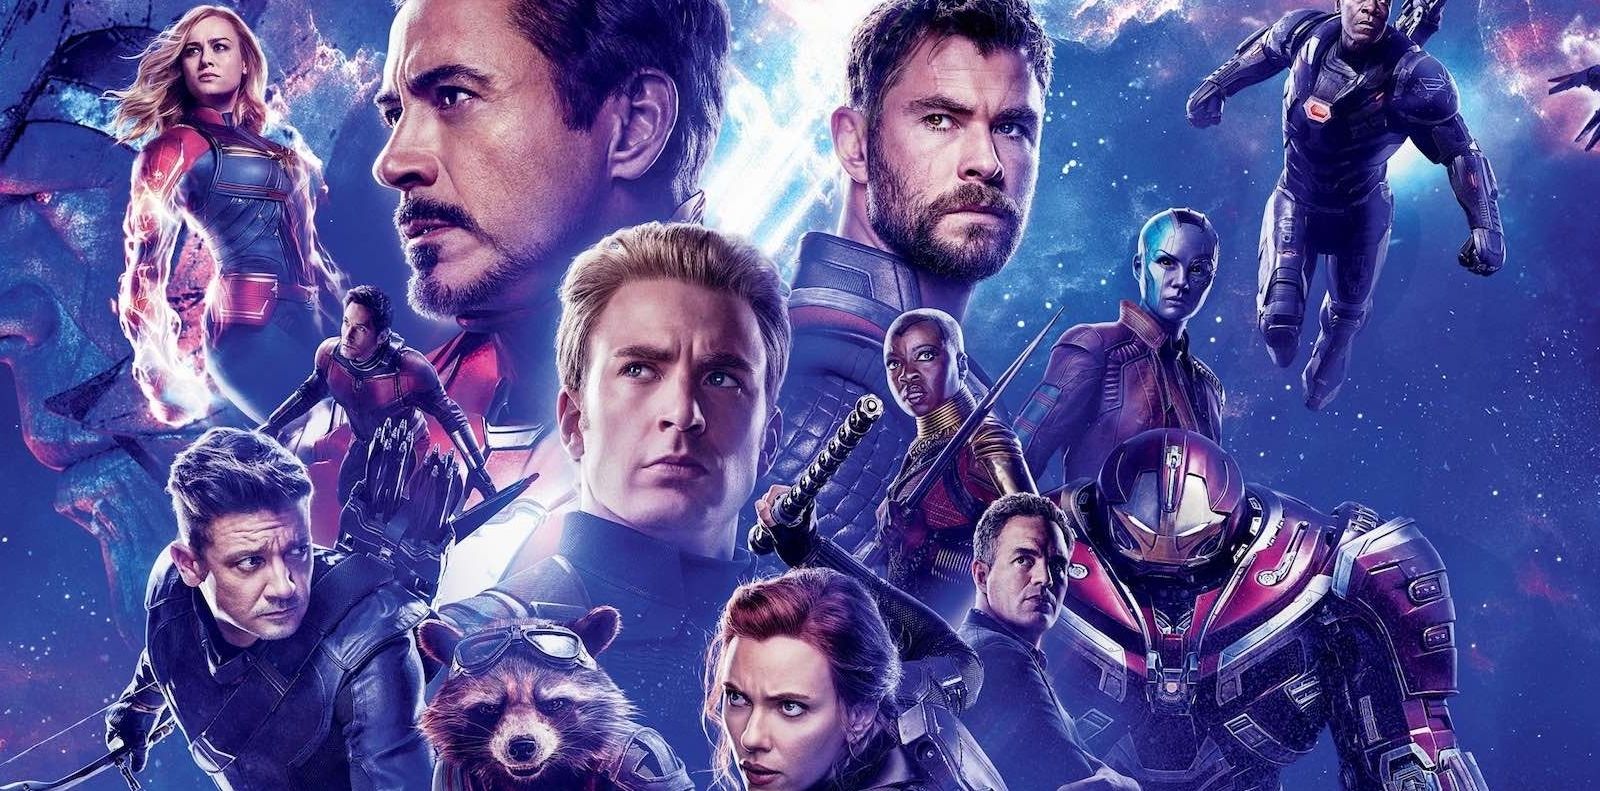 Le Blu-ray 4K Ultra HD d'Avengers : Endgame est disponible à la Fnac